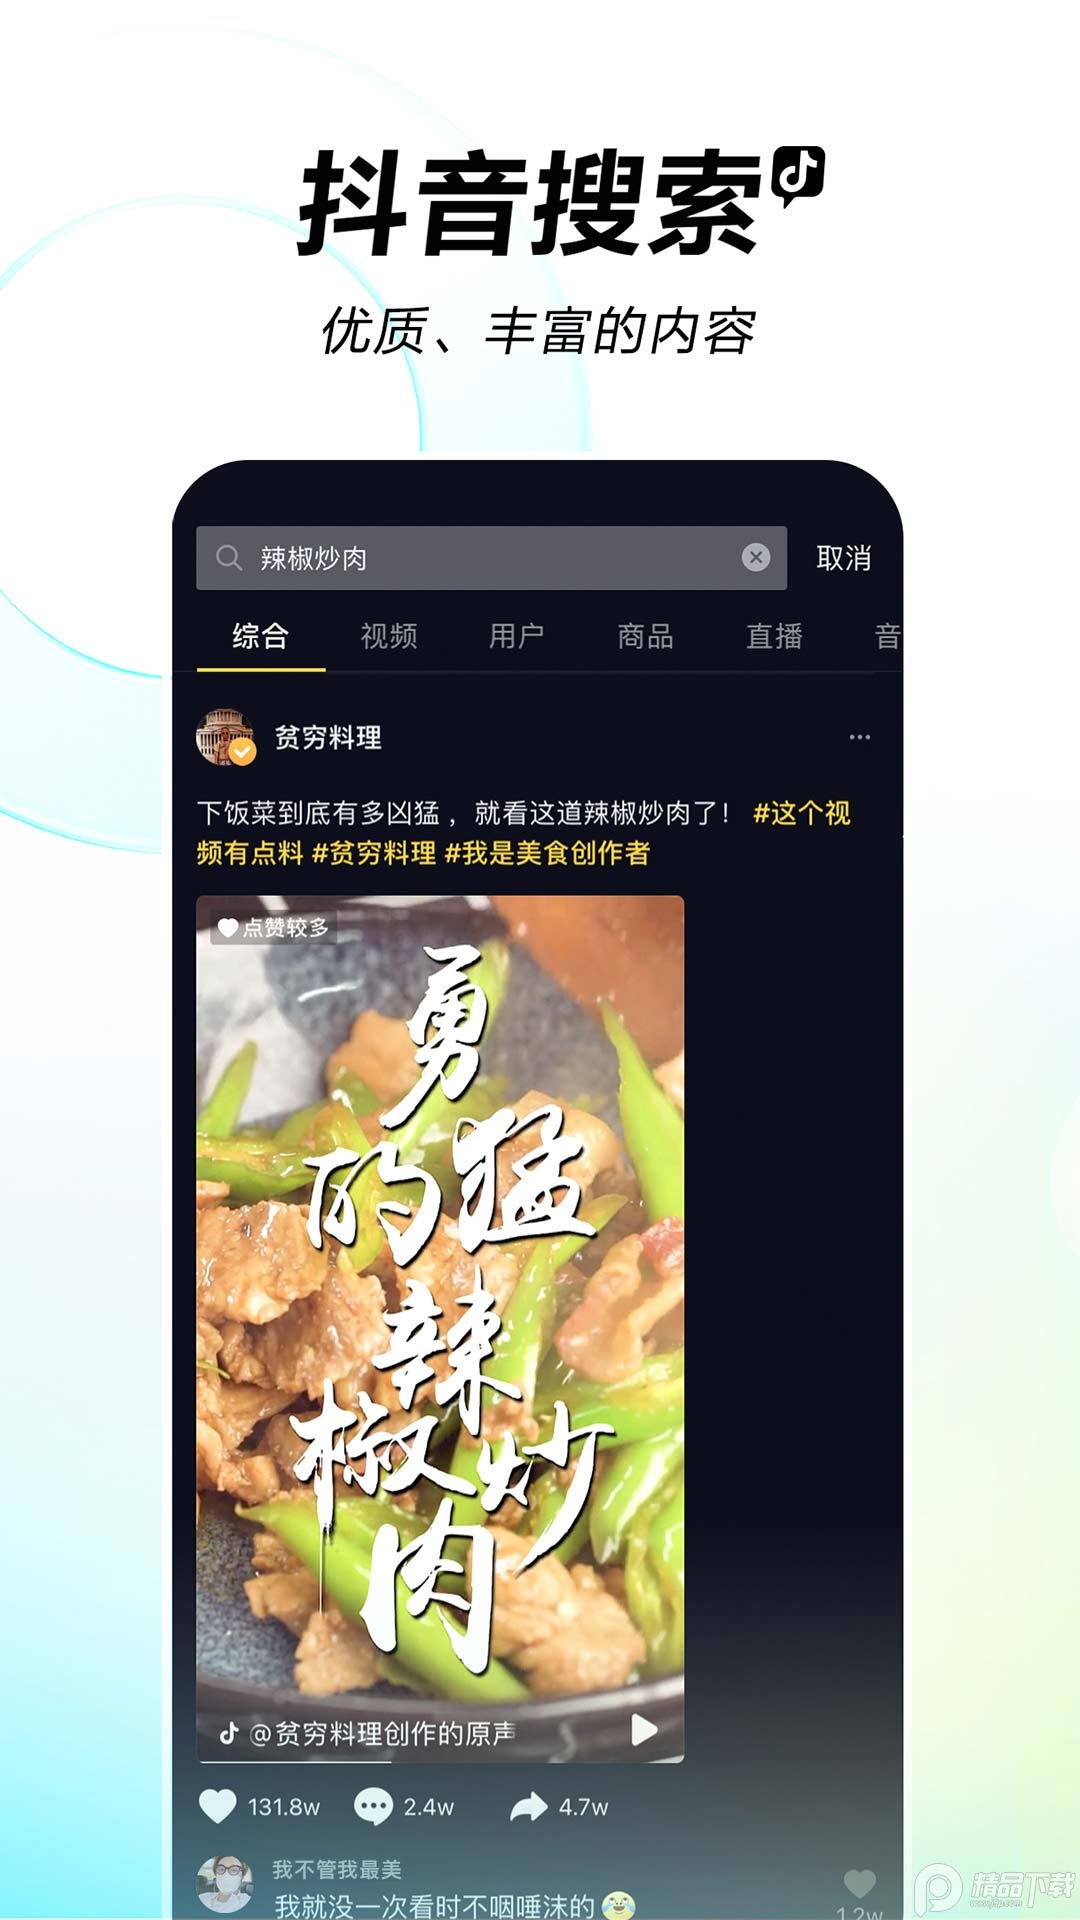 抖音短视频app官方下载